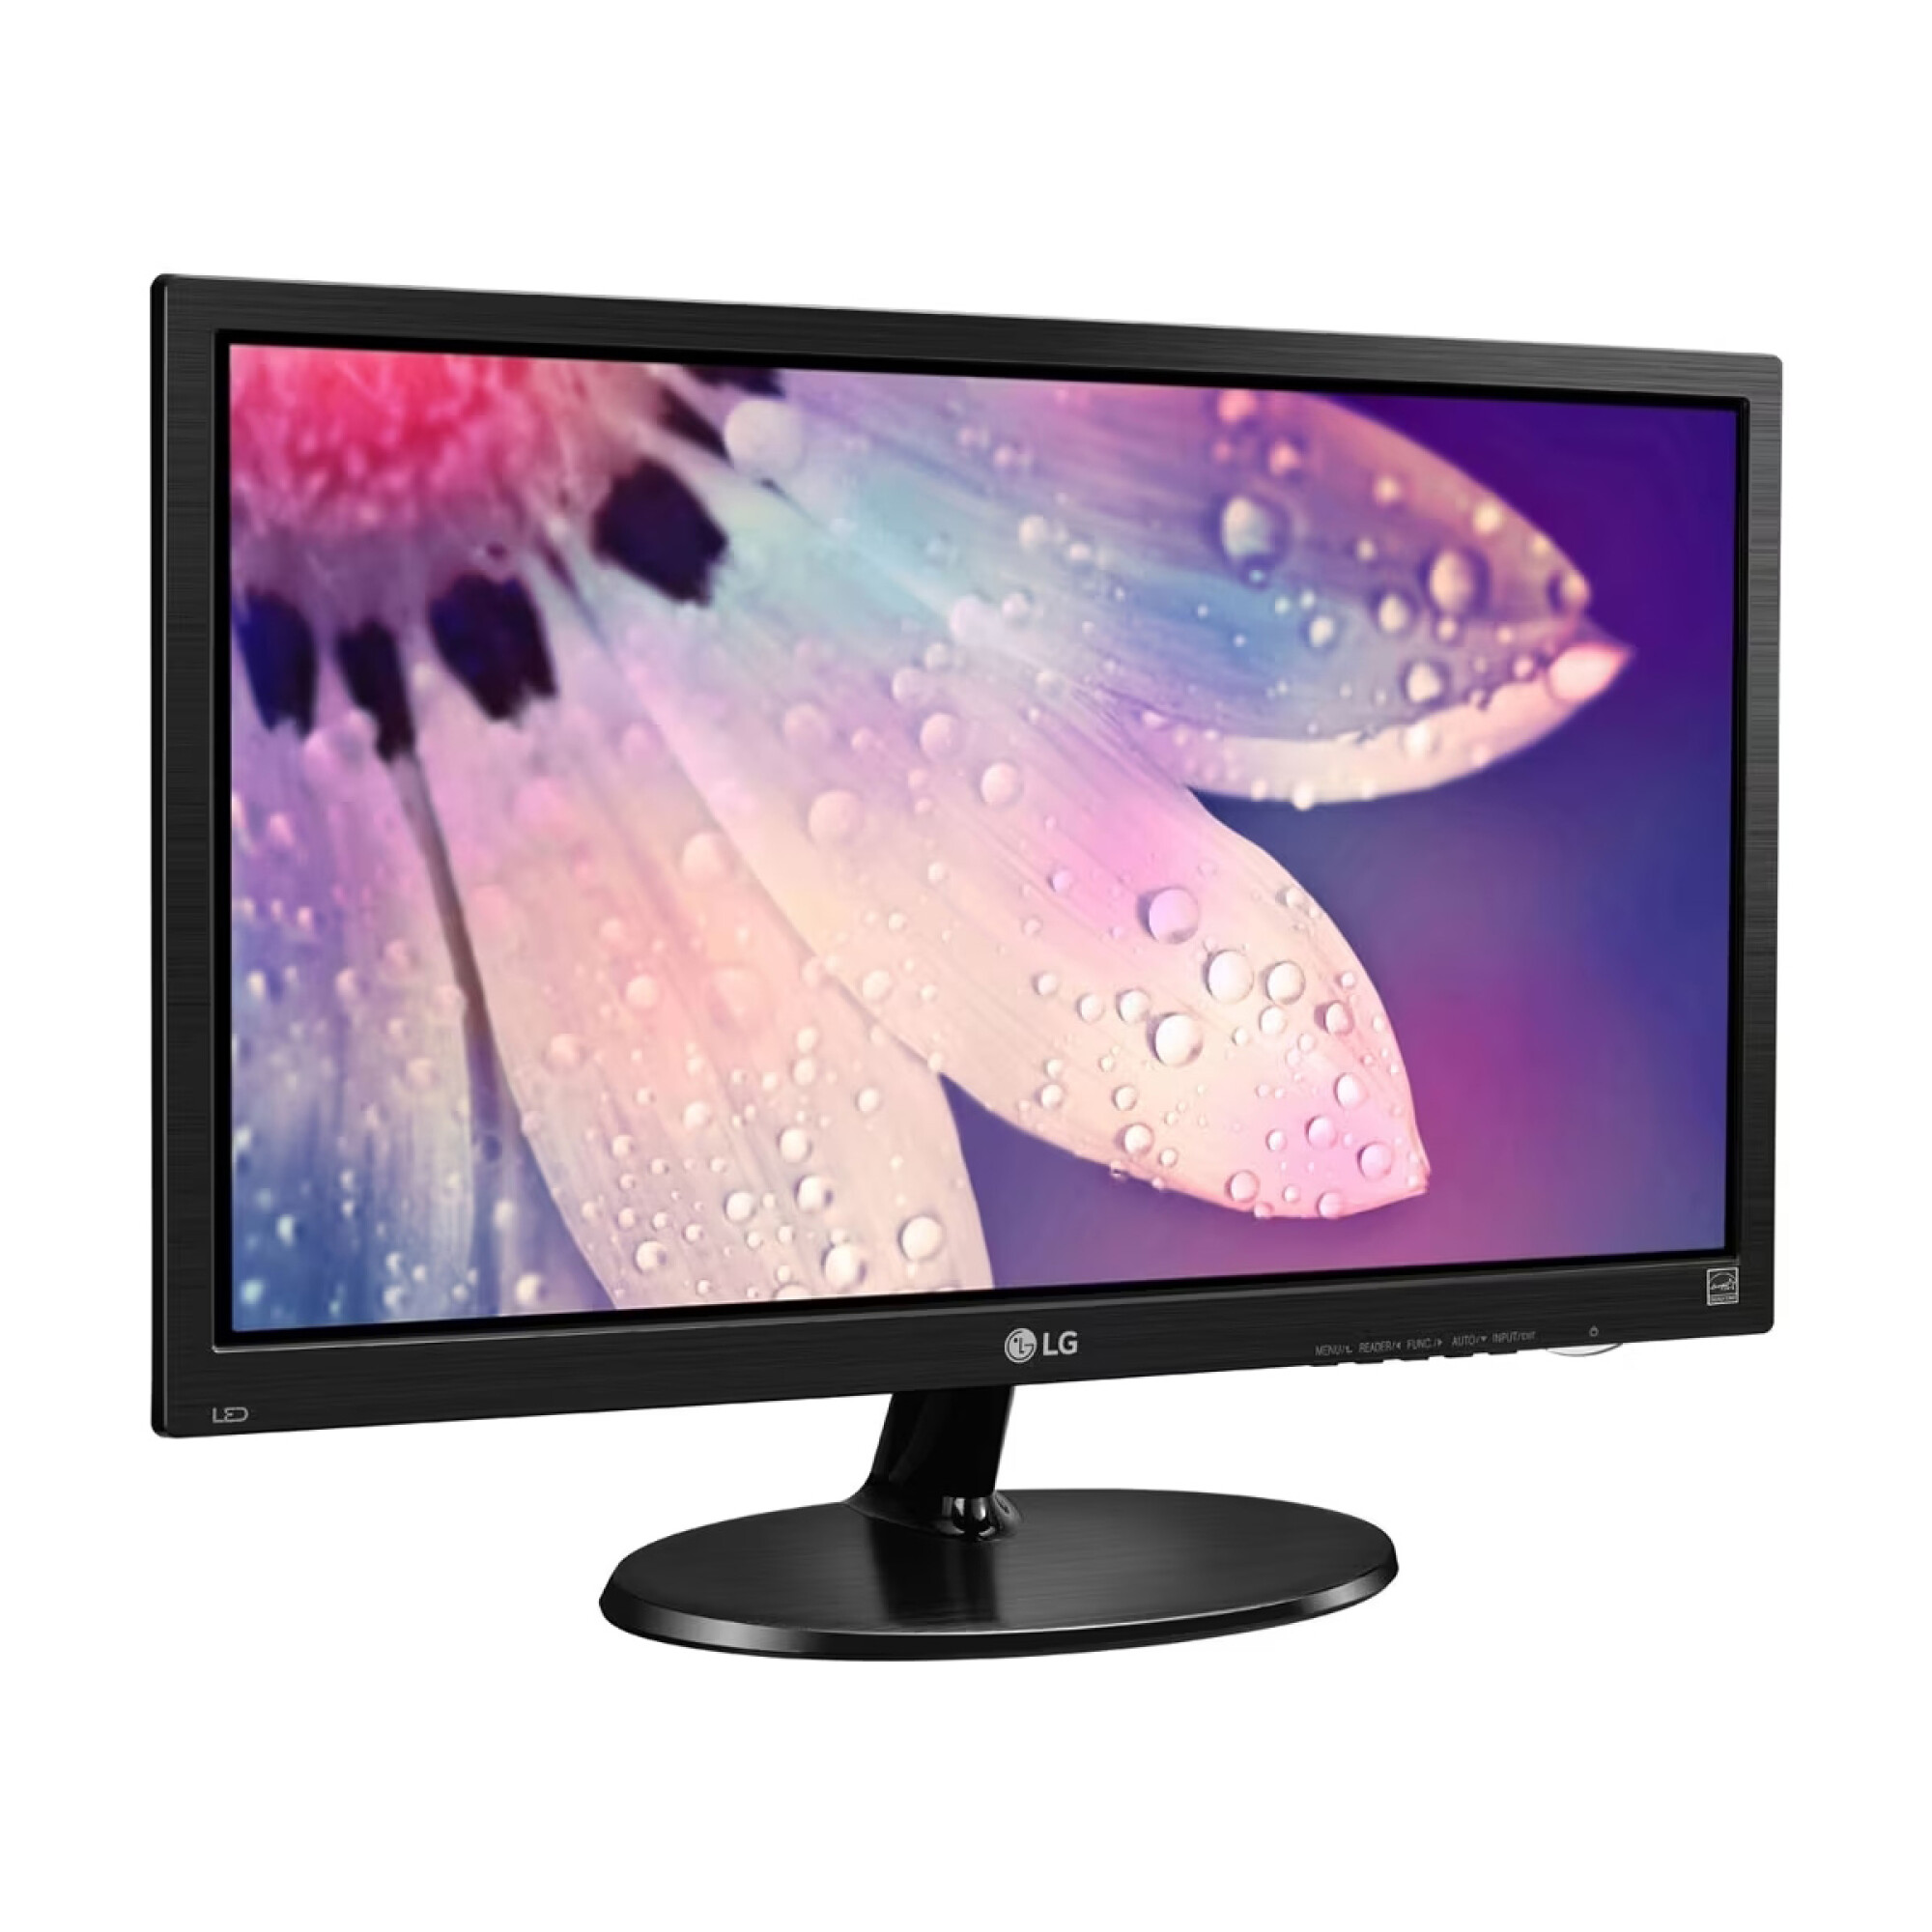 Monitor LG de 19 Pulgadas LCD TFT con HDMI 19M38H-B - Negra — Cover company